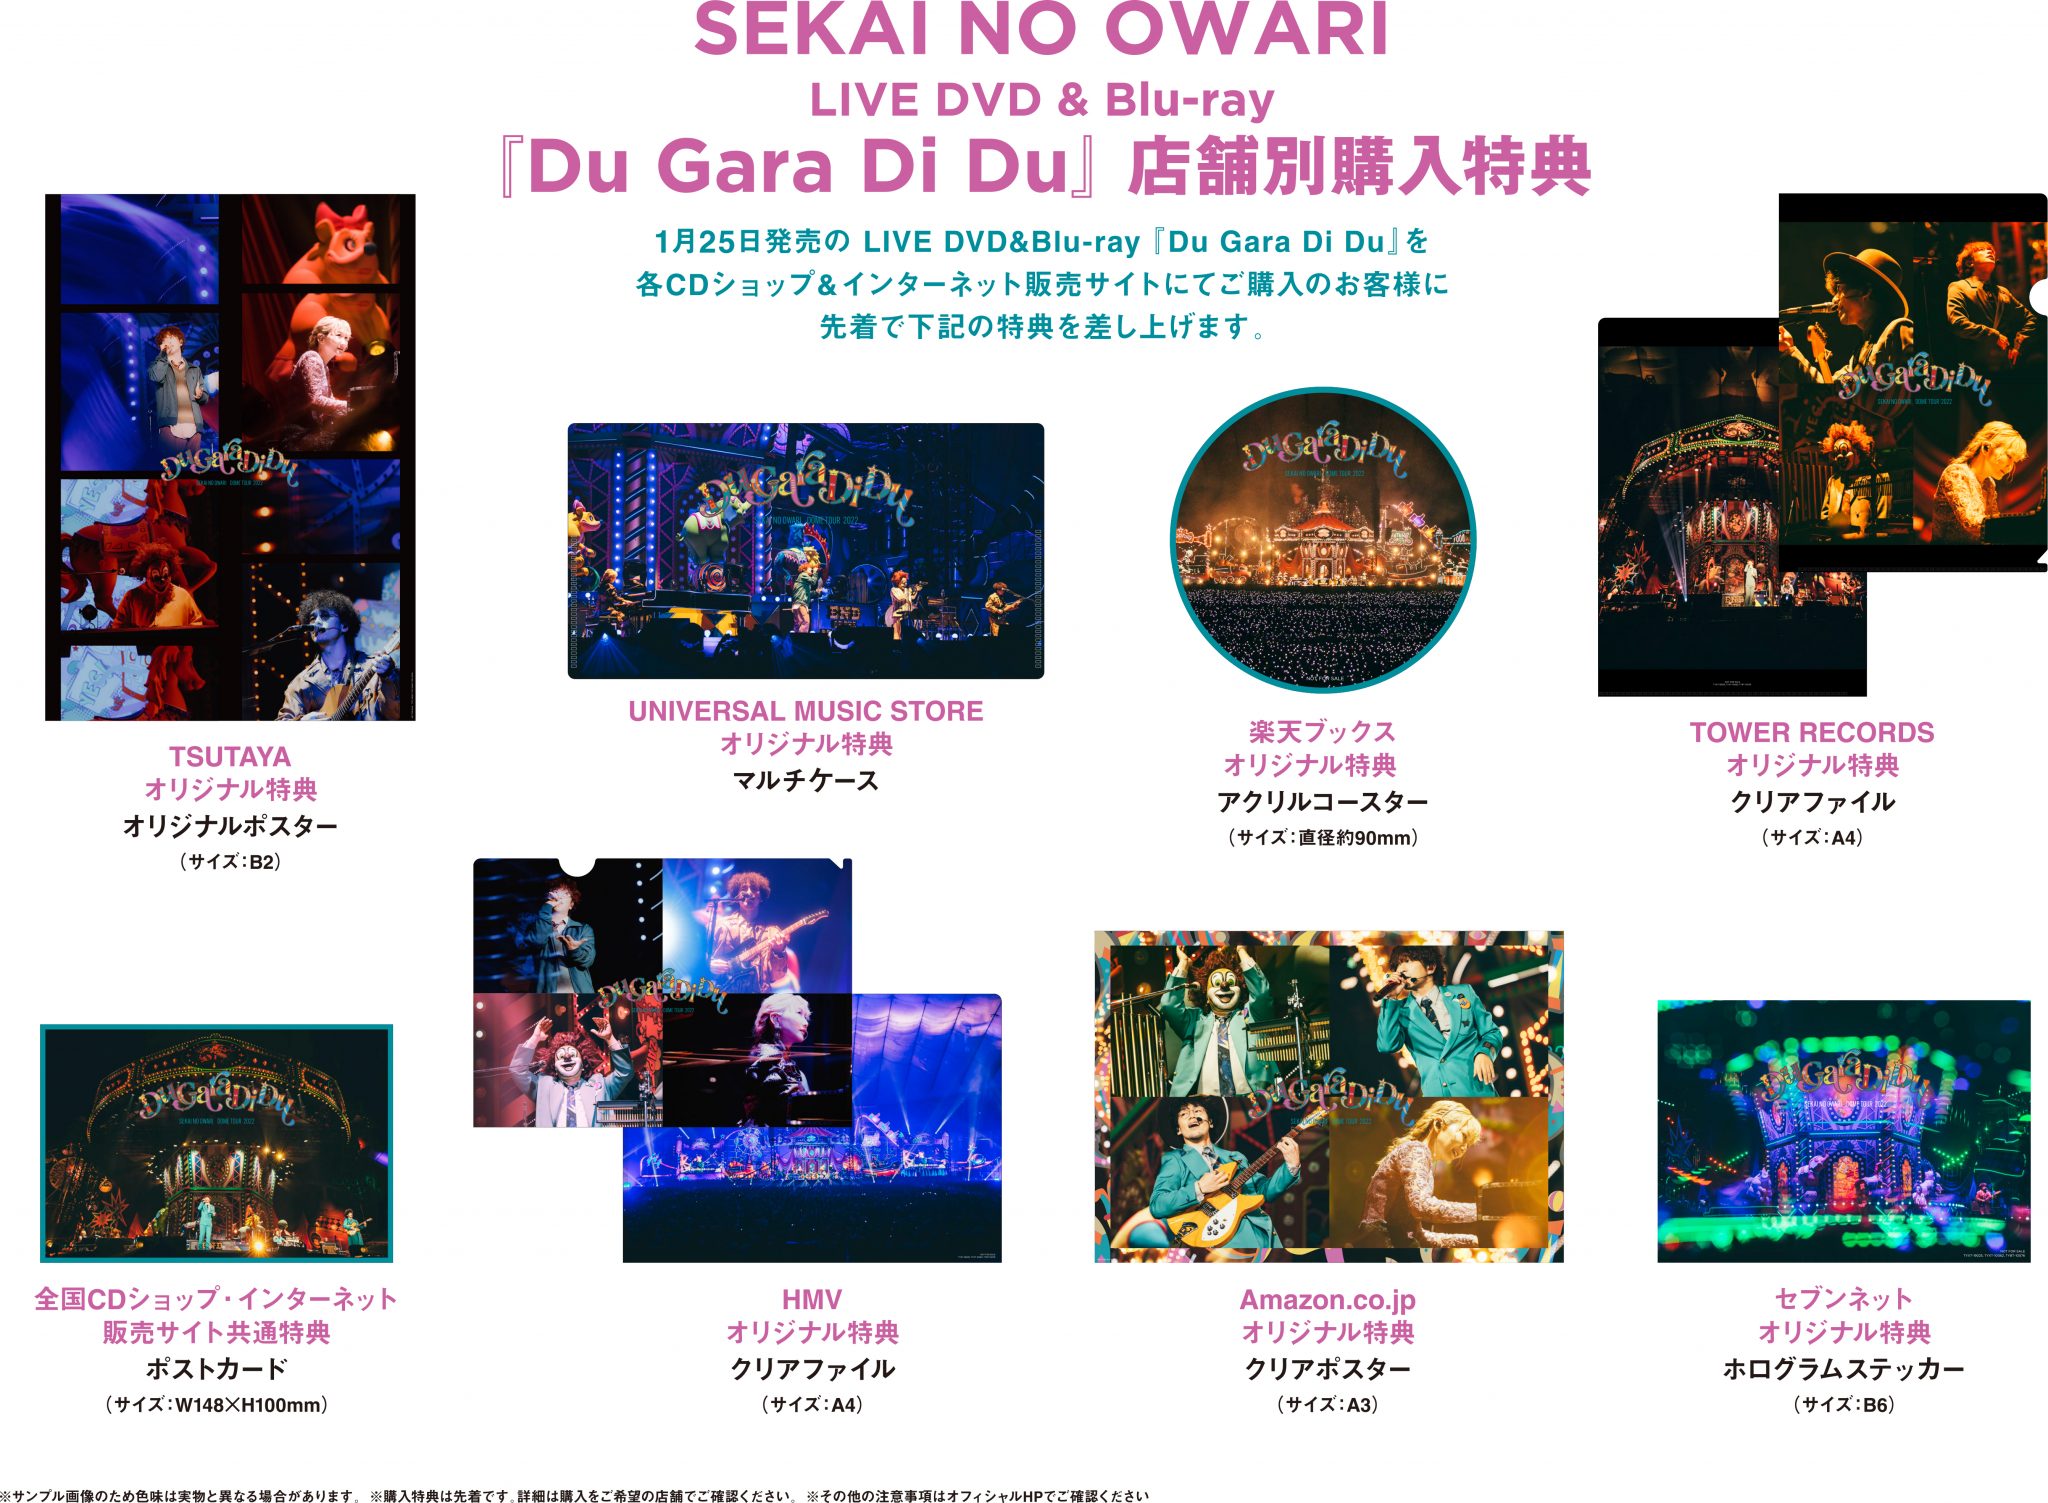 SEKAI NO OWARI 2022ライブBD/DVD特典まとめ | 7neko